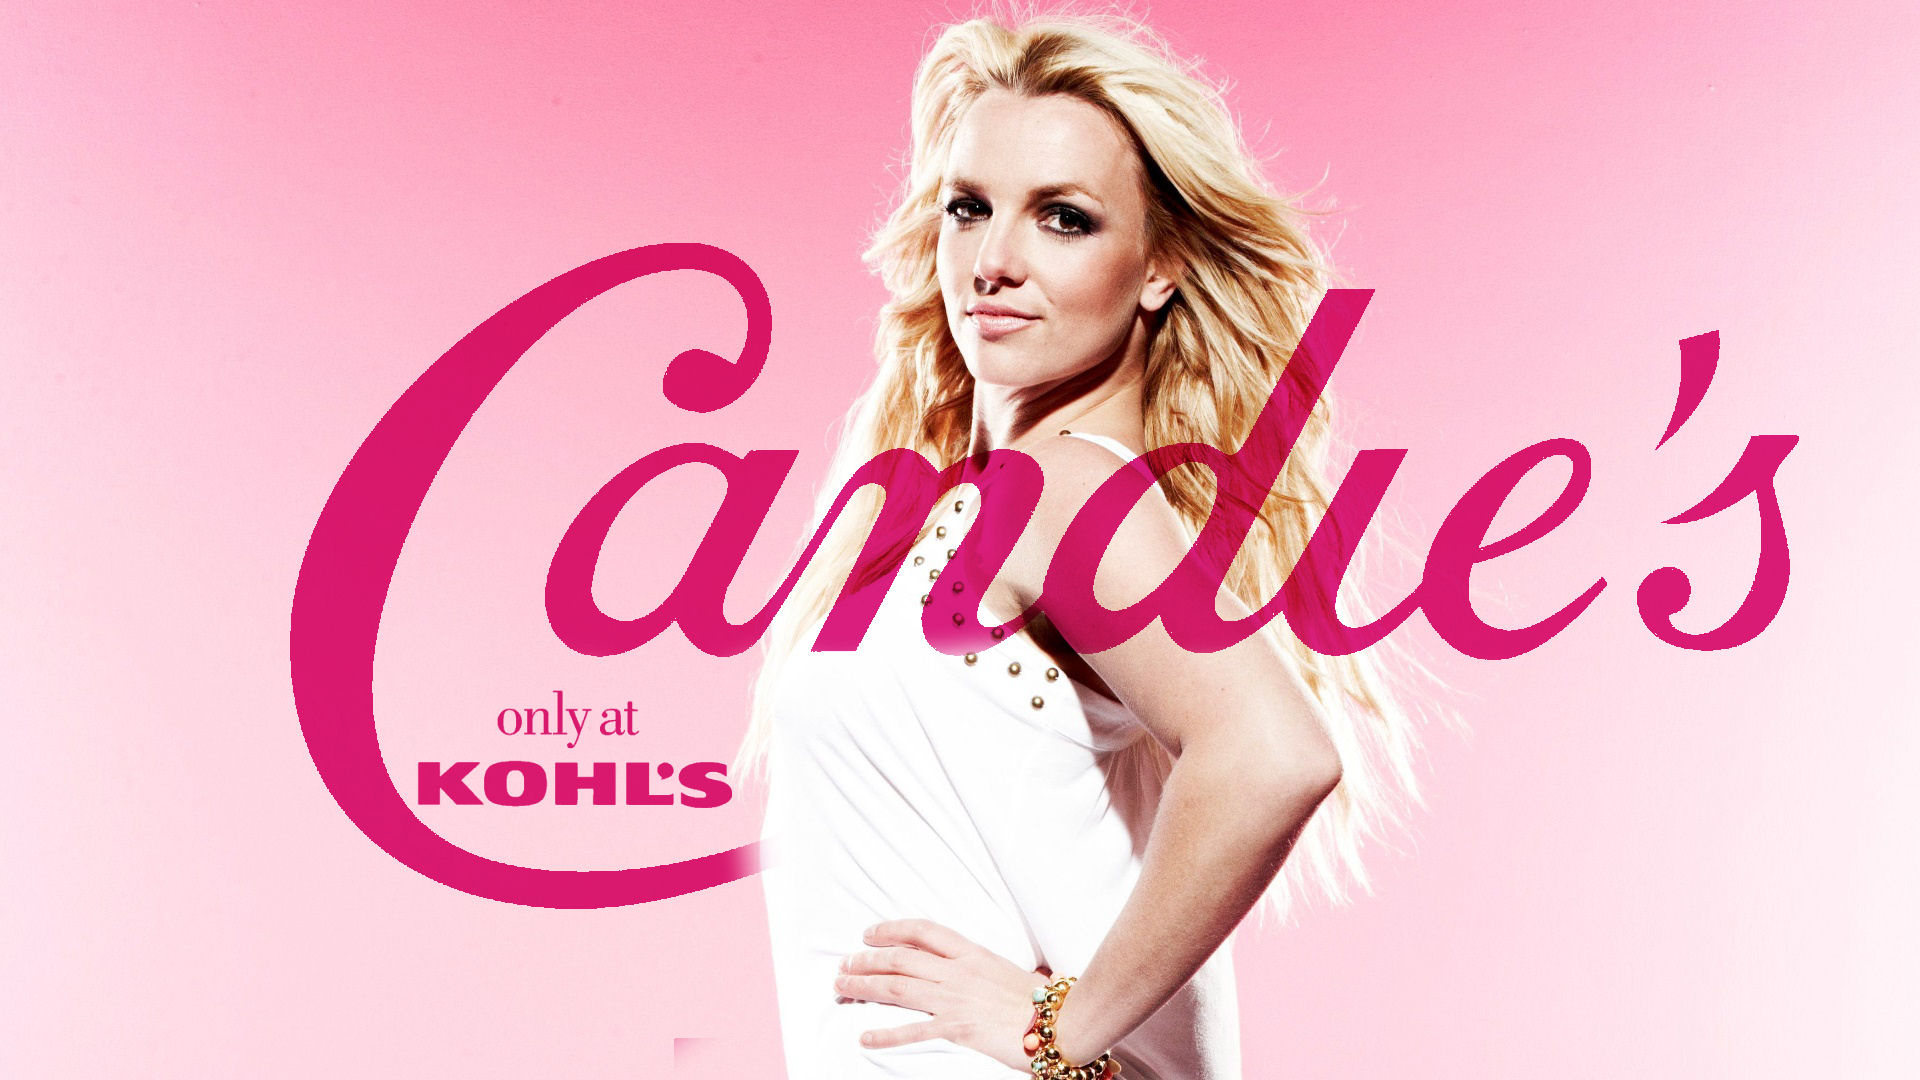 Britney Spears Candie's - Britney Spears Wallpaper (37329605) - Fanpop